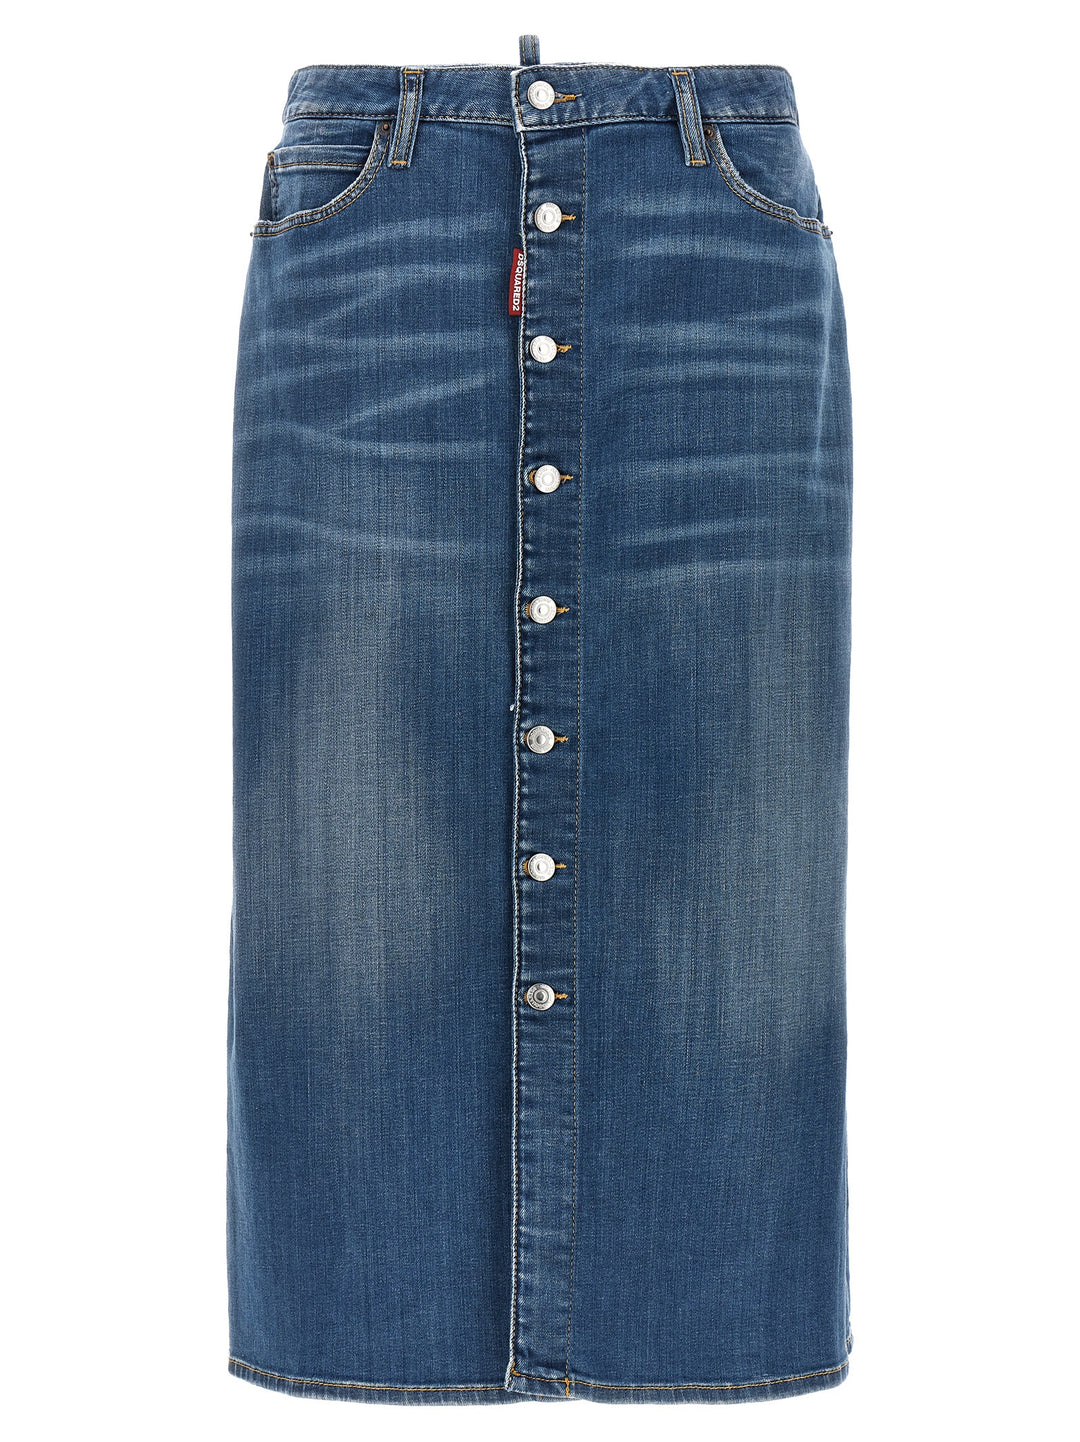 Denim Long Skirt Gonne Blu